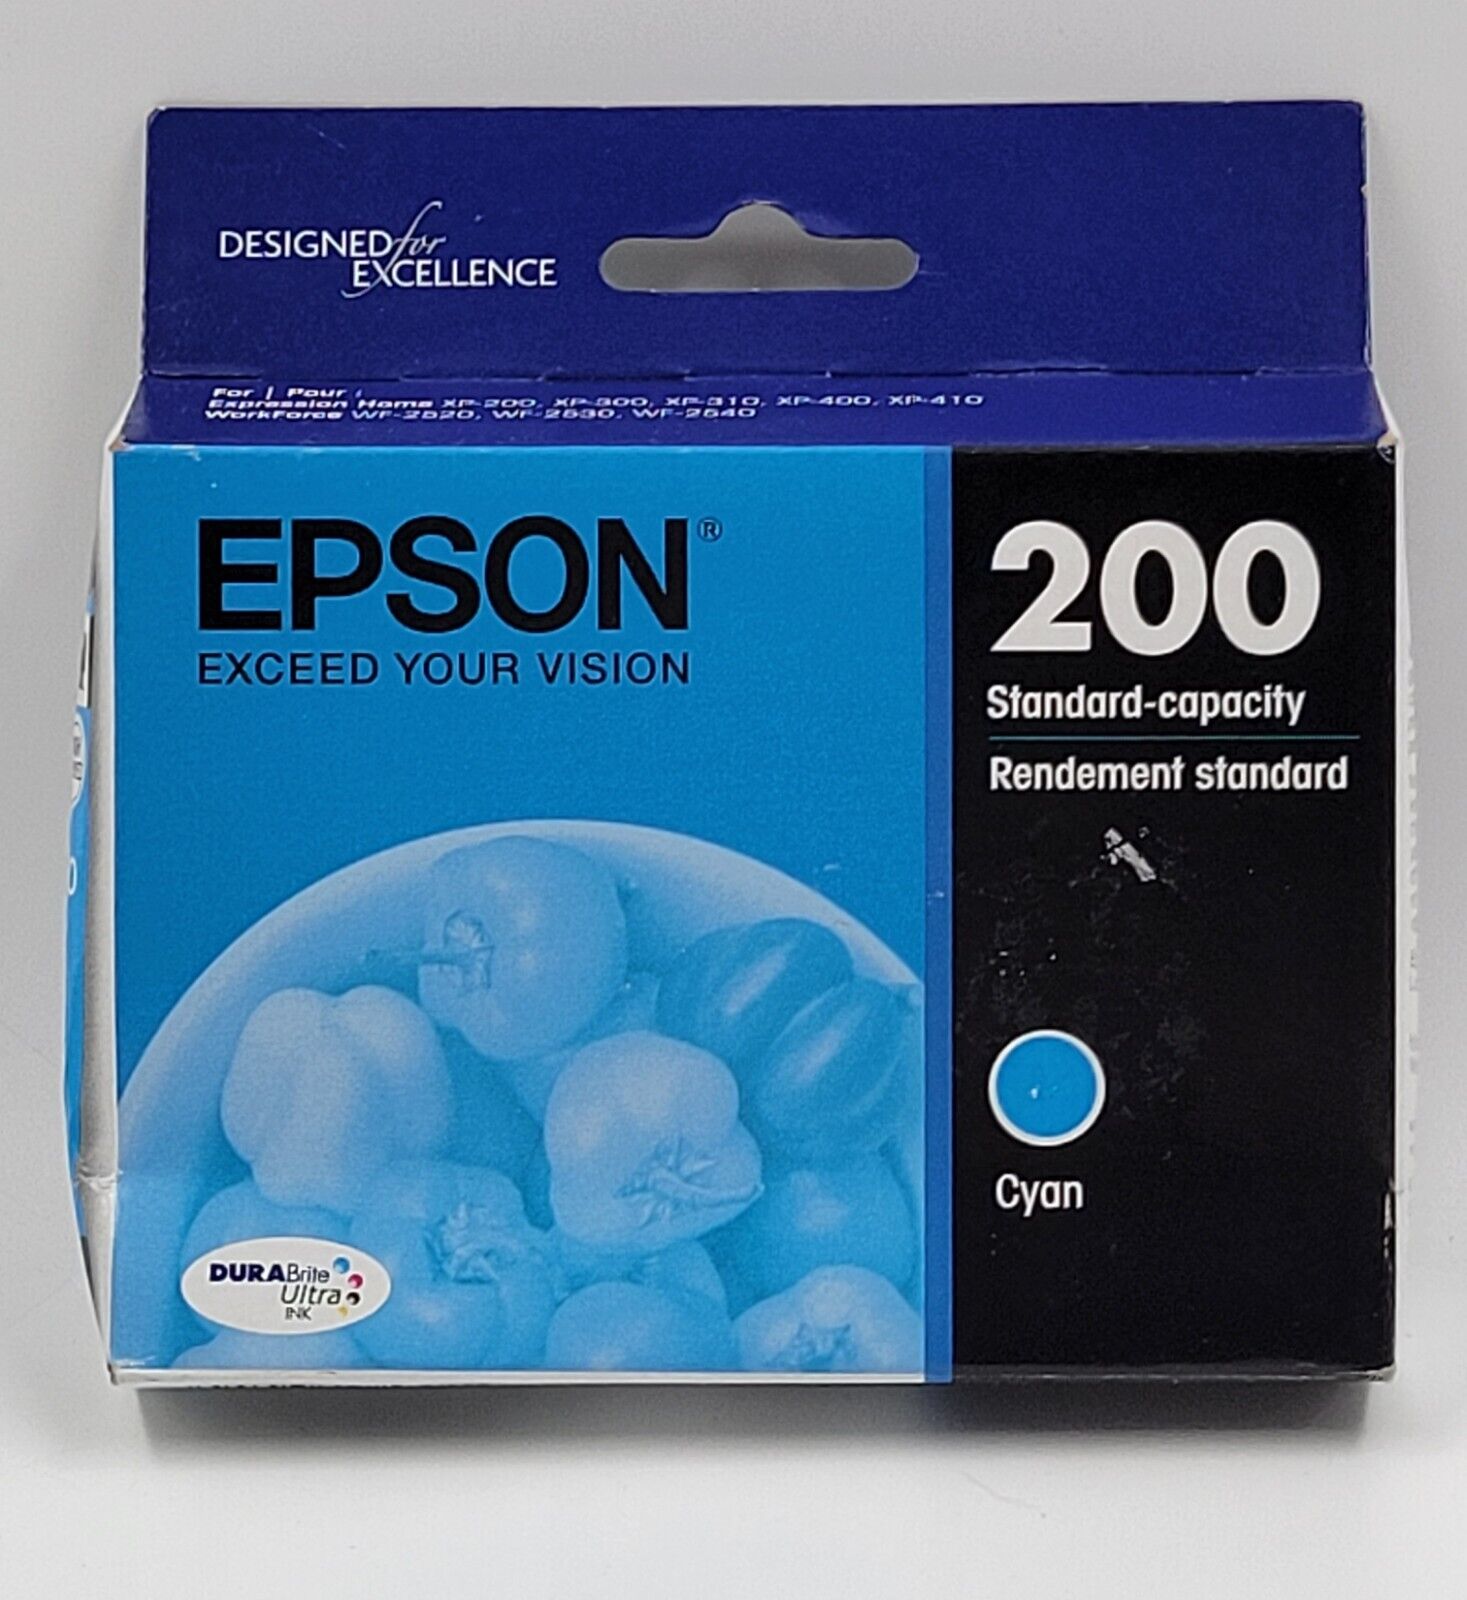 EPSON 200 CYAN STANDARD-CAPACITY INK CARTRIDGES GENUINE 01/2026 NEW SEALED